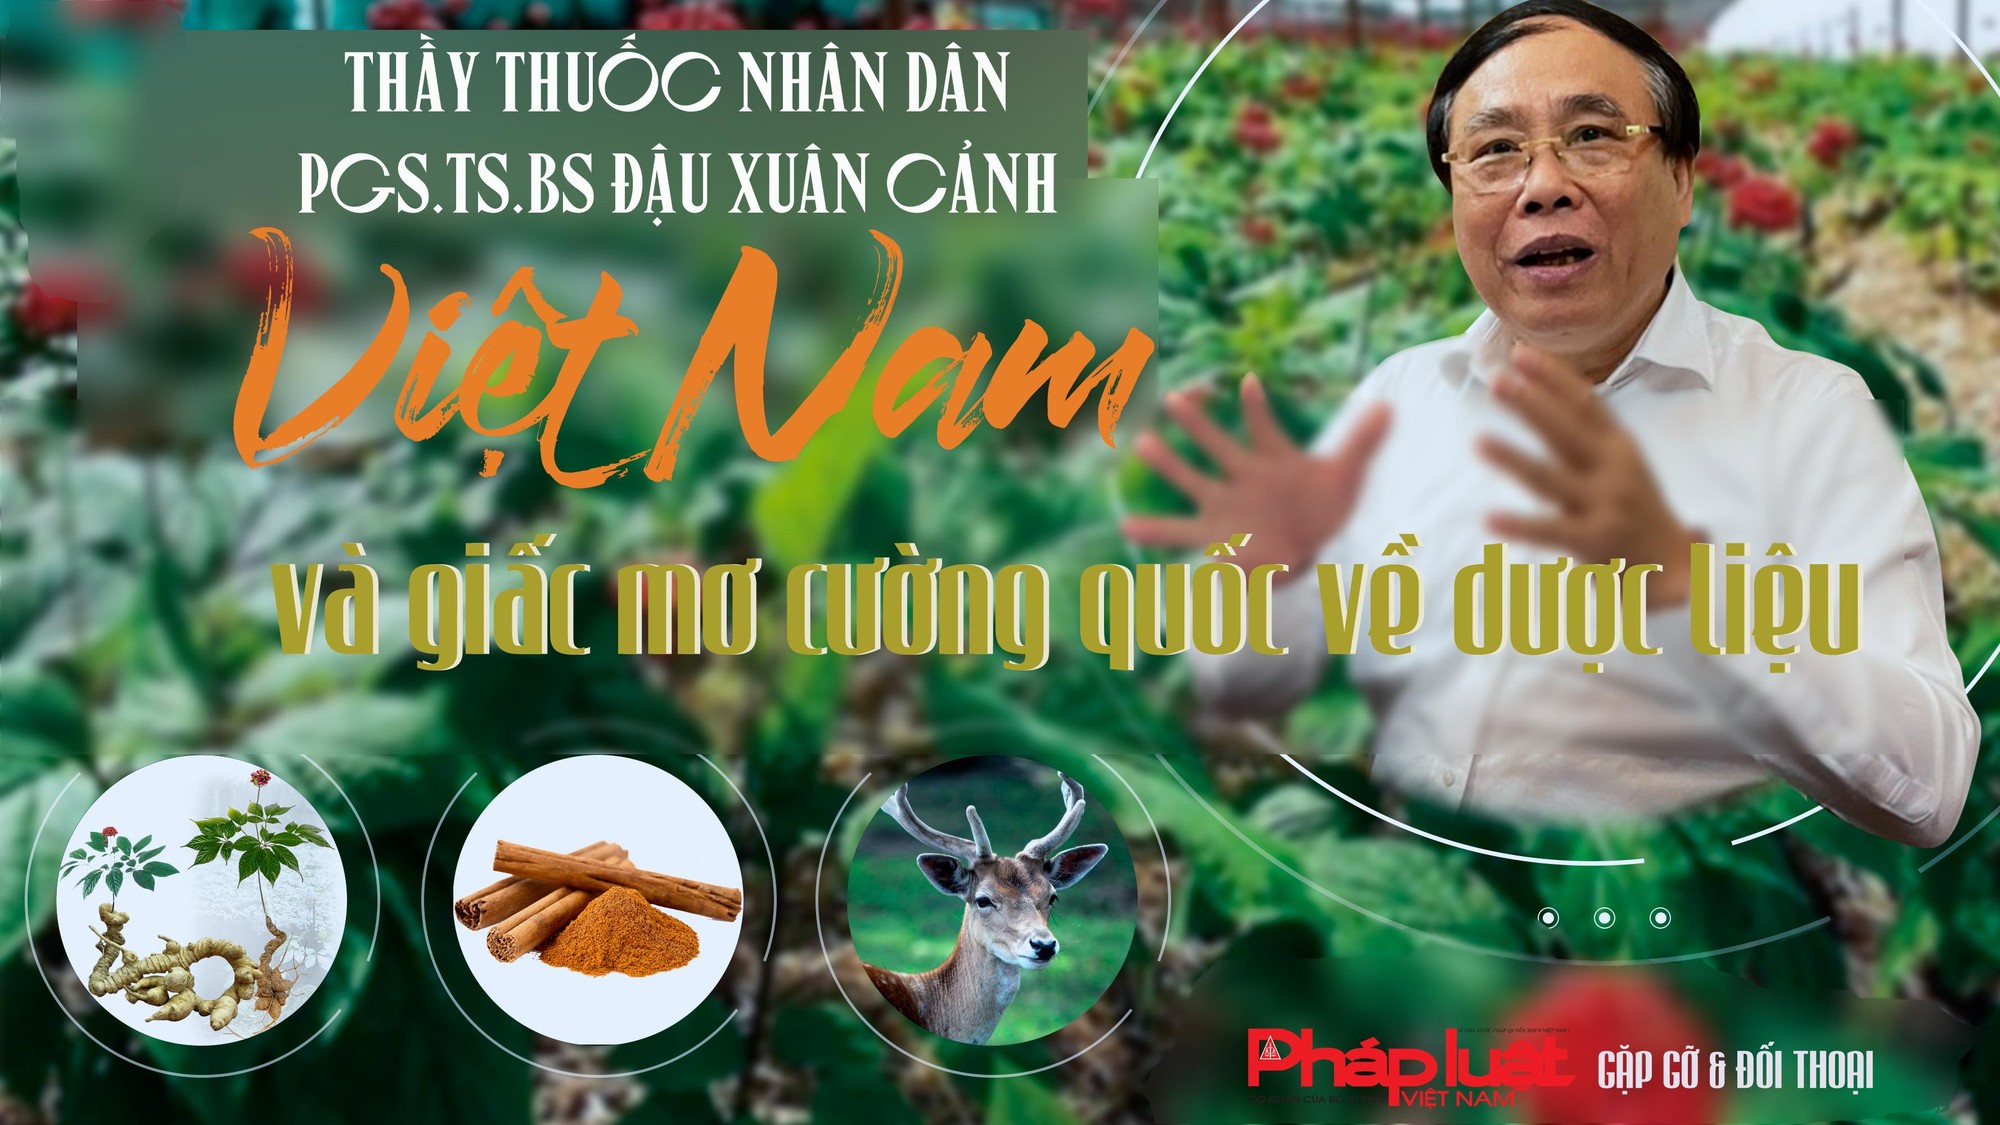 PGS.TS.BS Đậu Xuân Cảnh: Việt Nam và giấc mơ cường quốc về dược liệu